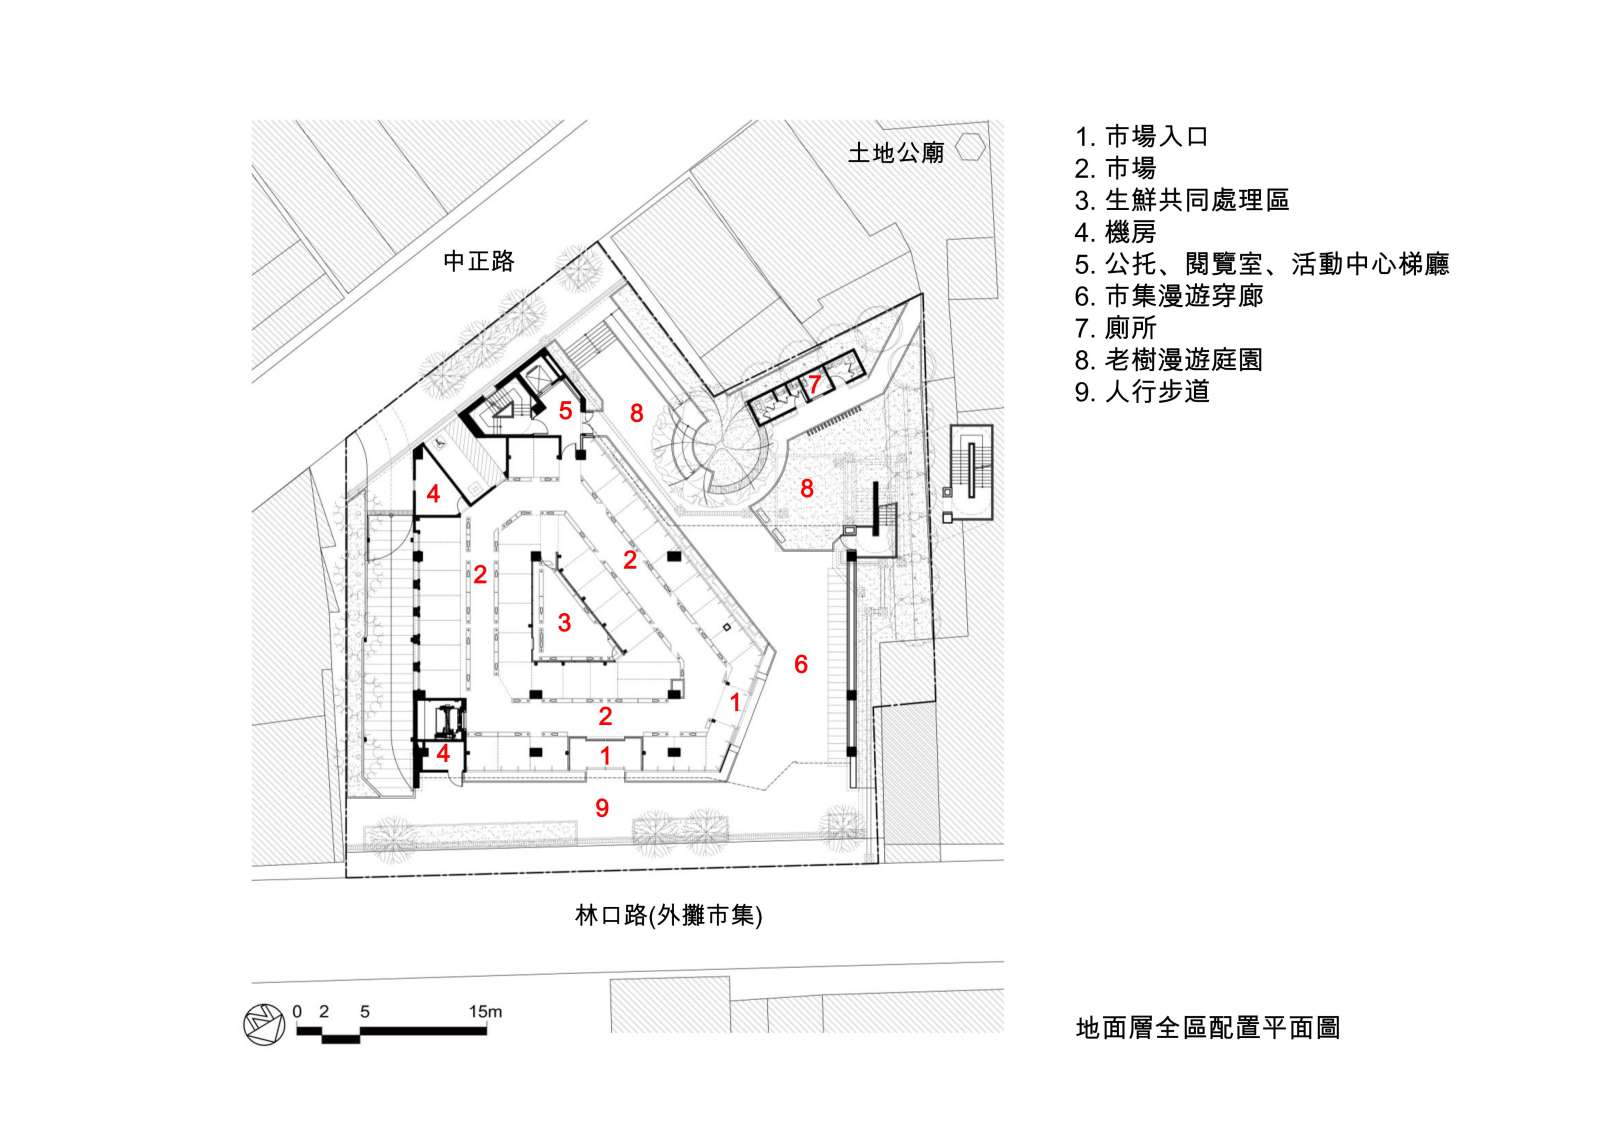 地面層全區配置平面圖 1F PLAN 新北市林口公有零售市場／盧俊廷建築師事務所